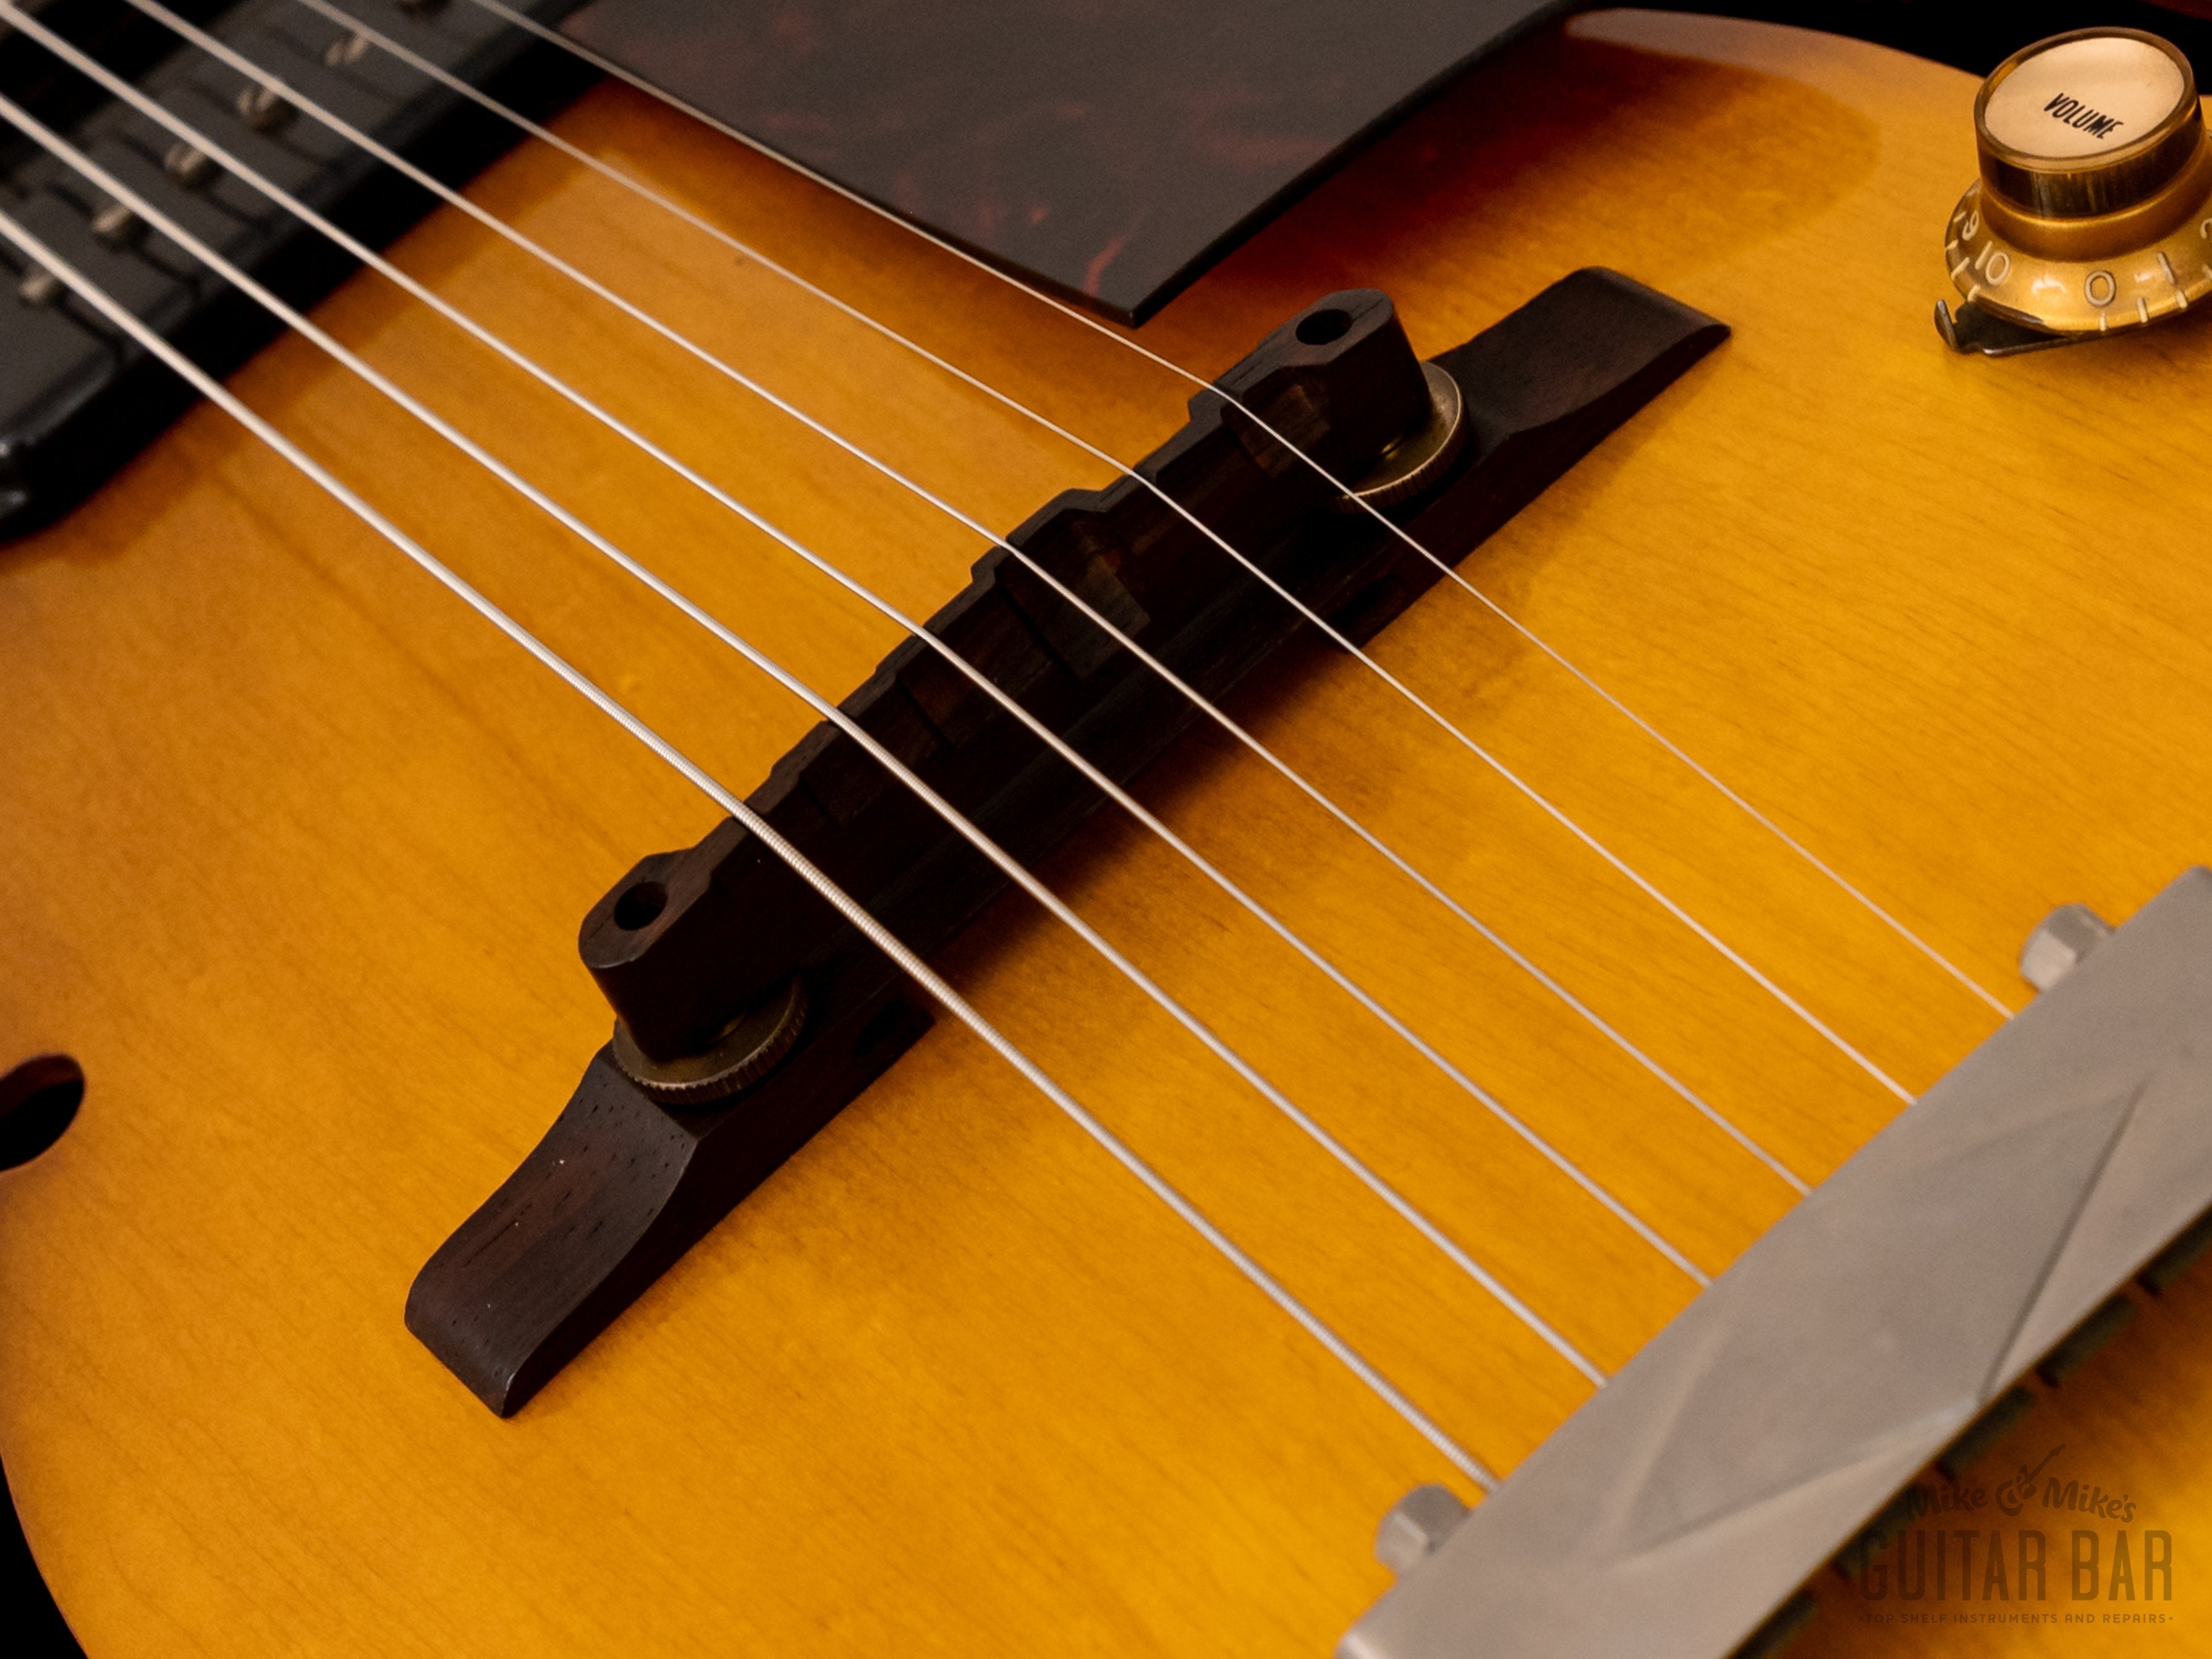 1962 Gibson ES-125 Vintage Archtop Guitar Sunburst 100% Original w/ P-90, Case